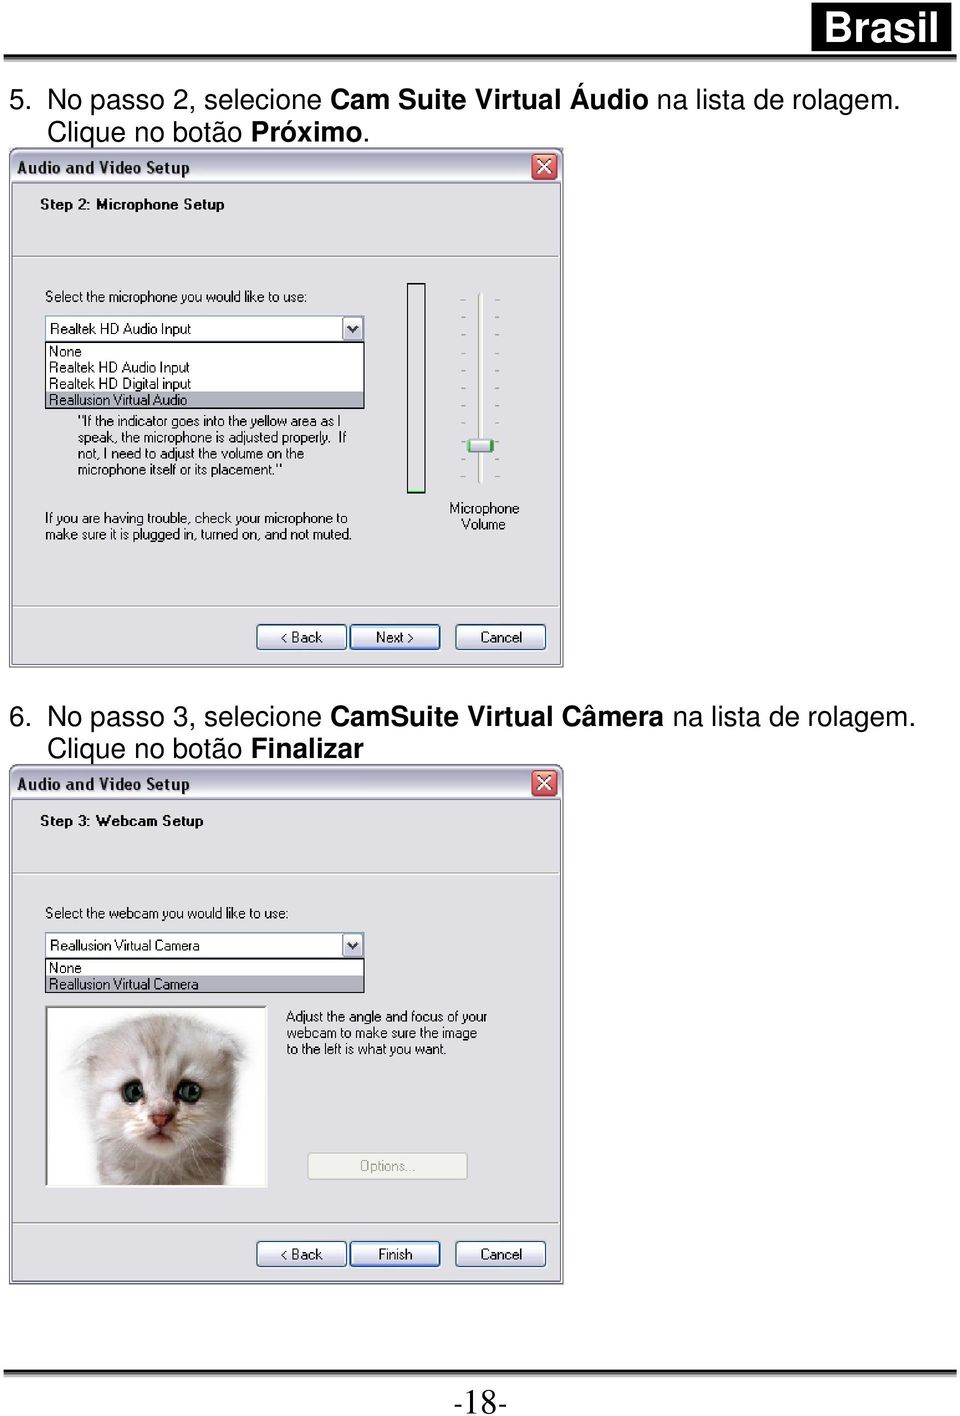 No passo 3, selecione CamSuite Virtual Câmera na